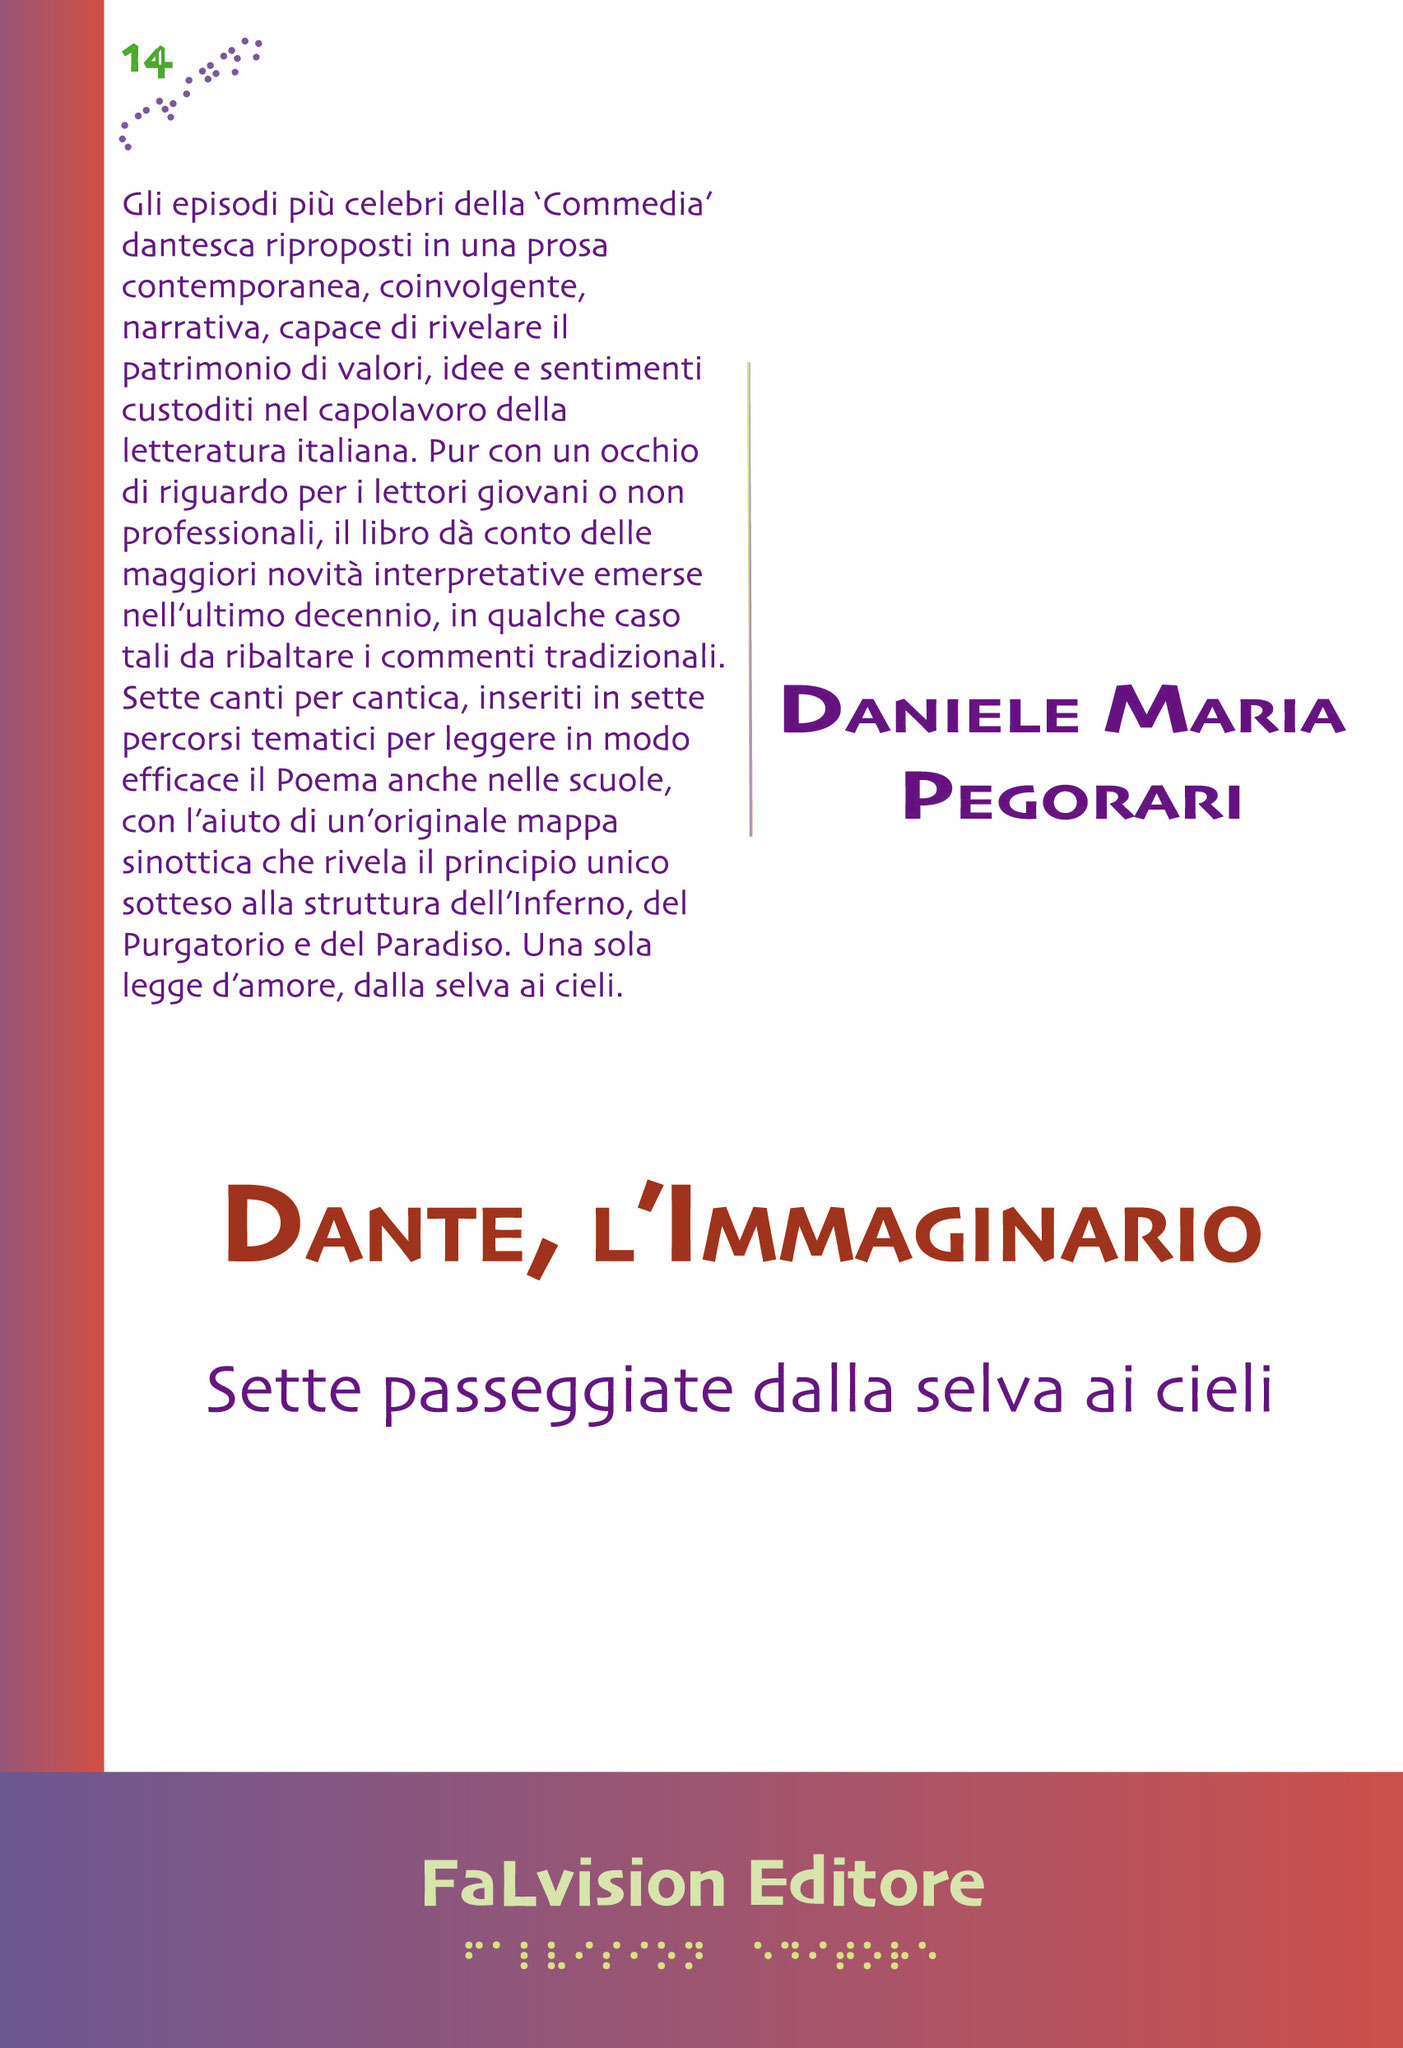 Dante, l'Immaginario. Sette passeggiate dalla selva ai cieli, Daniele Maria Pegorari